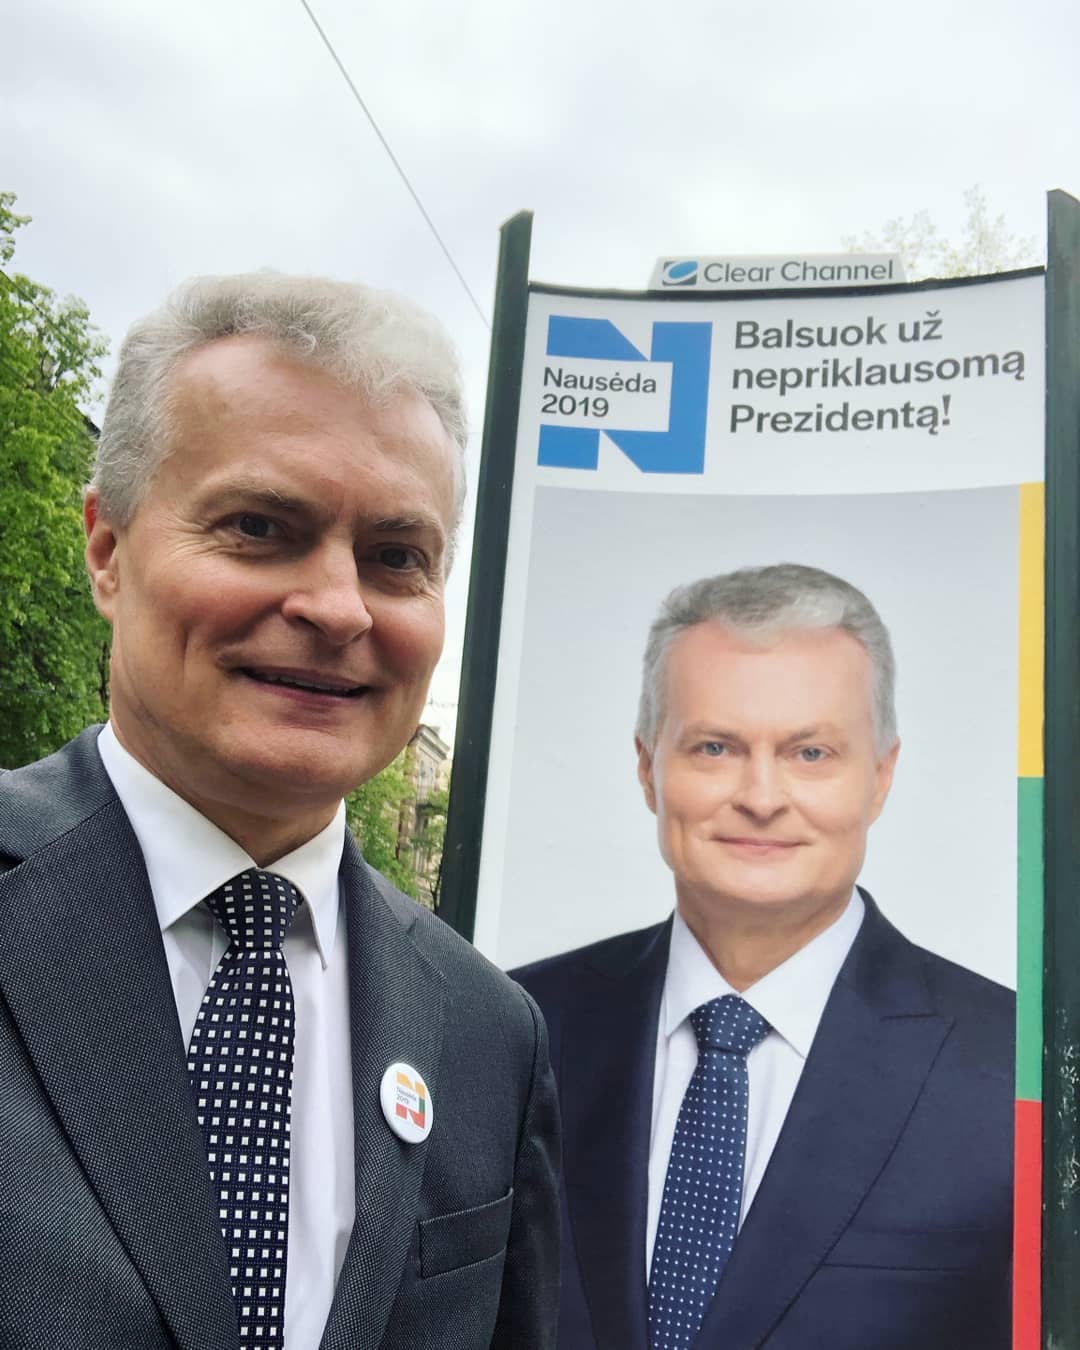 Ингрида Шимоните и Гитанас Науседа проходят во второй тур президентских выборов в Литве